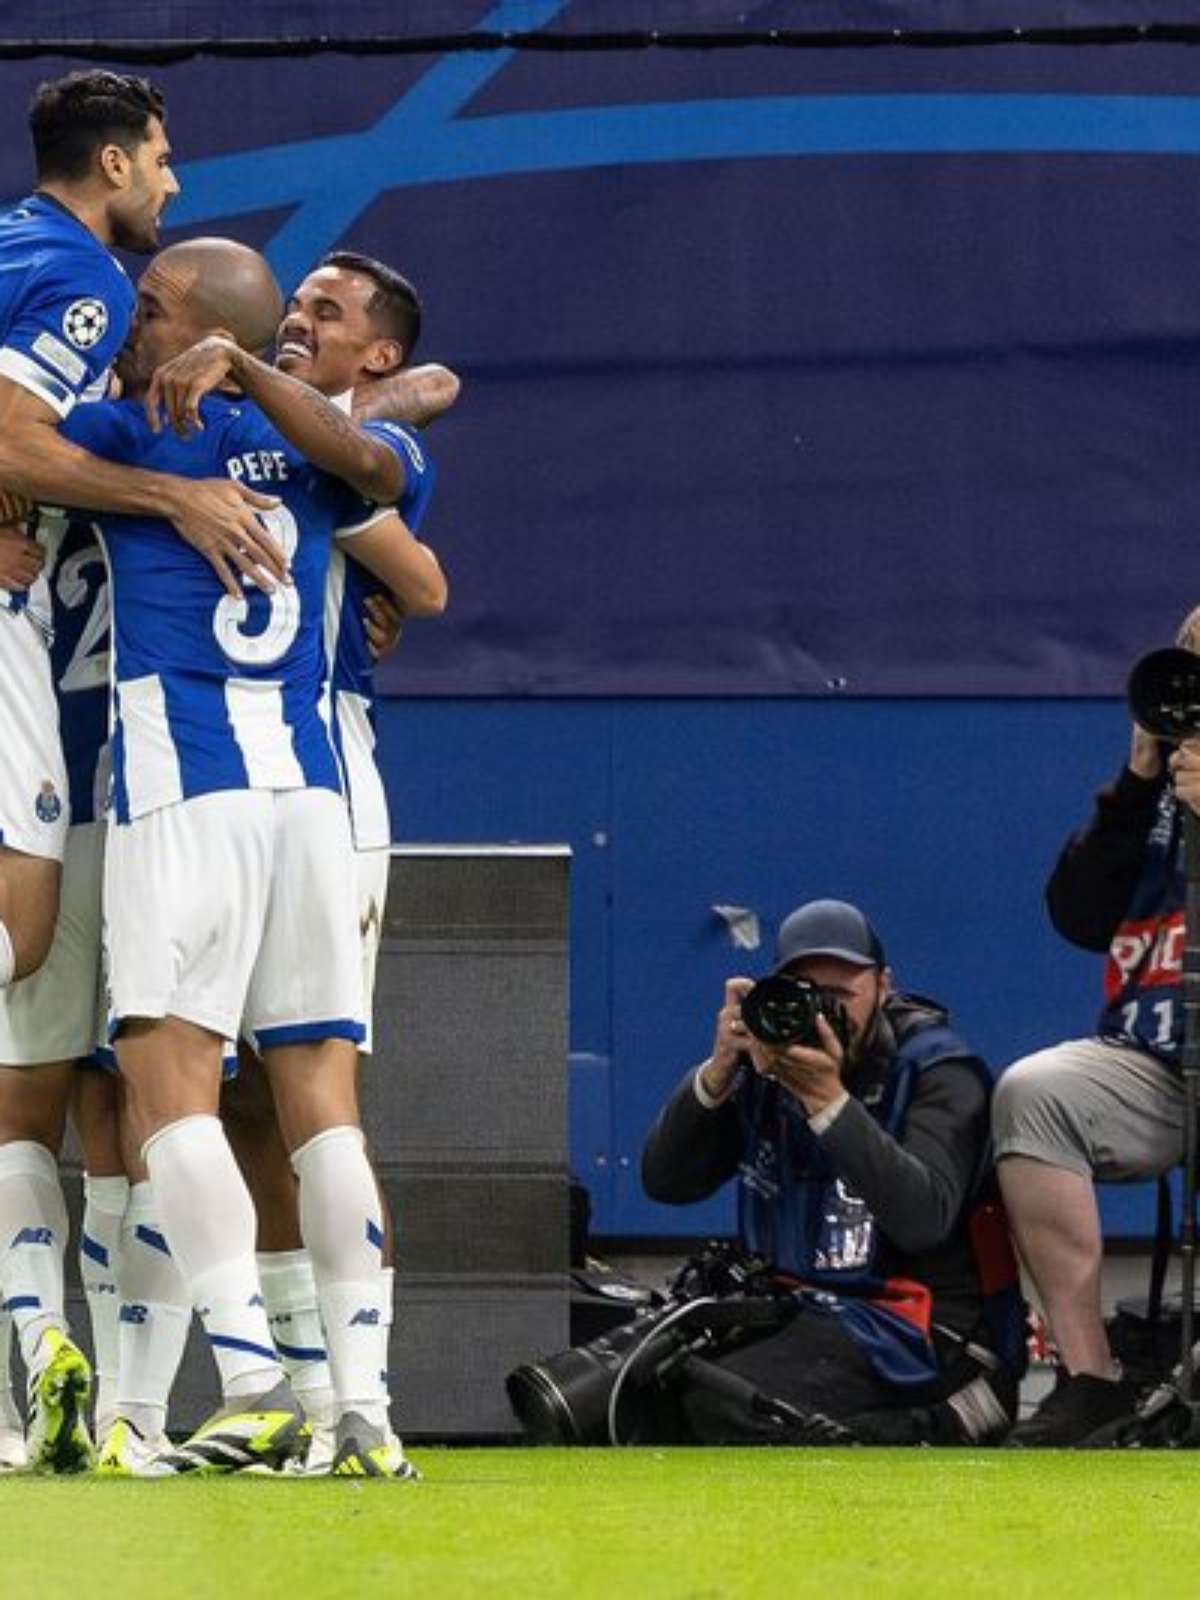 Com dois gols de Galeno, Porto estreia na Champions com vitória